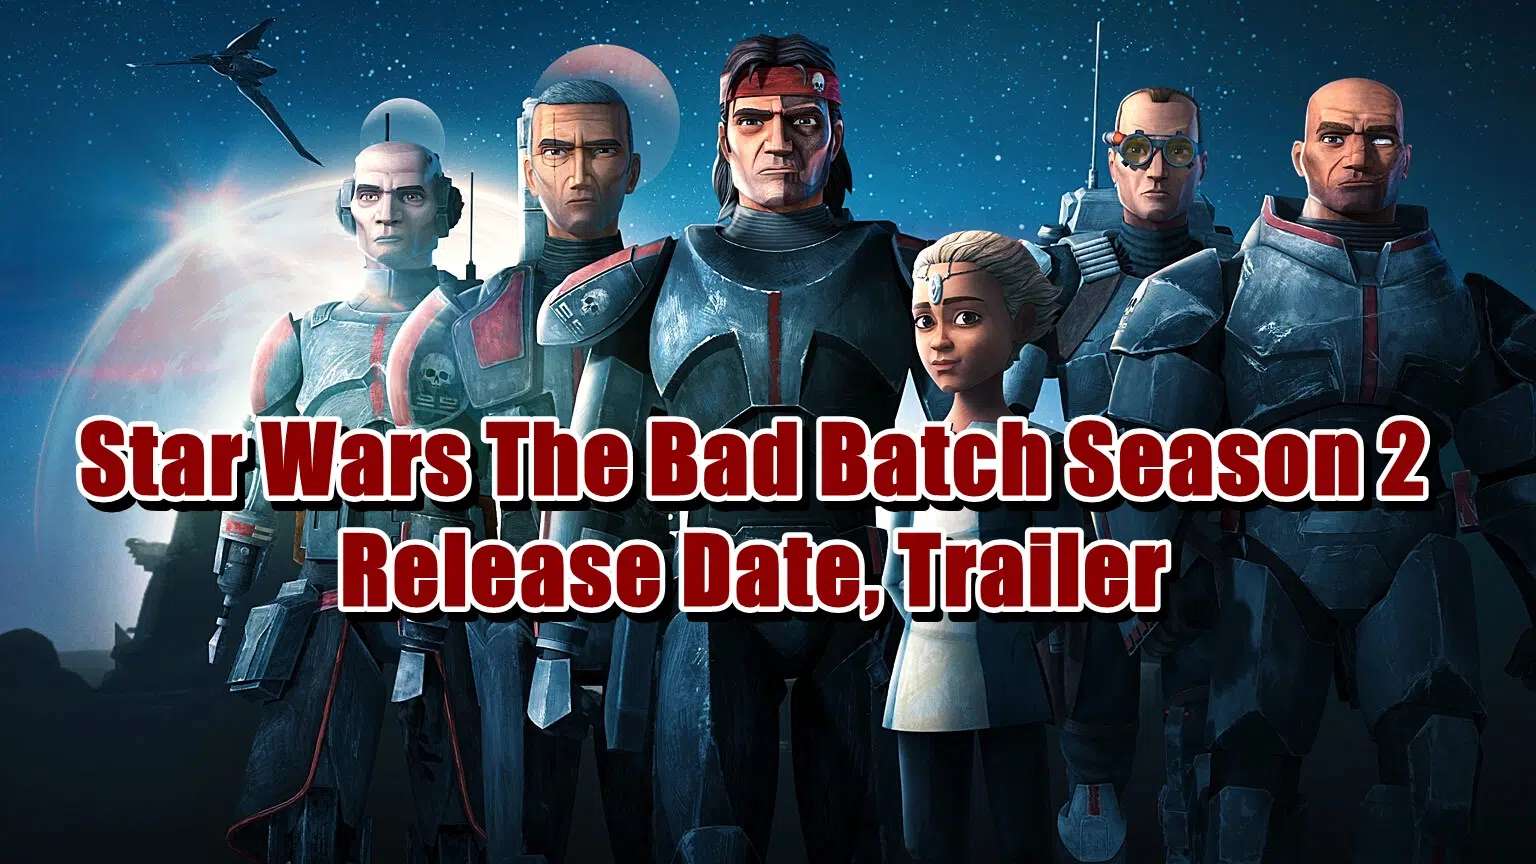 Star Wars The Bad Batch Season 2 Release Date, Trailer